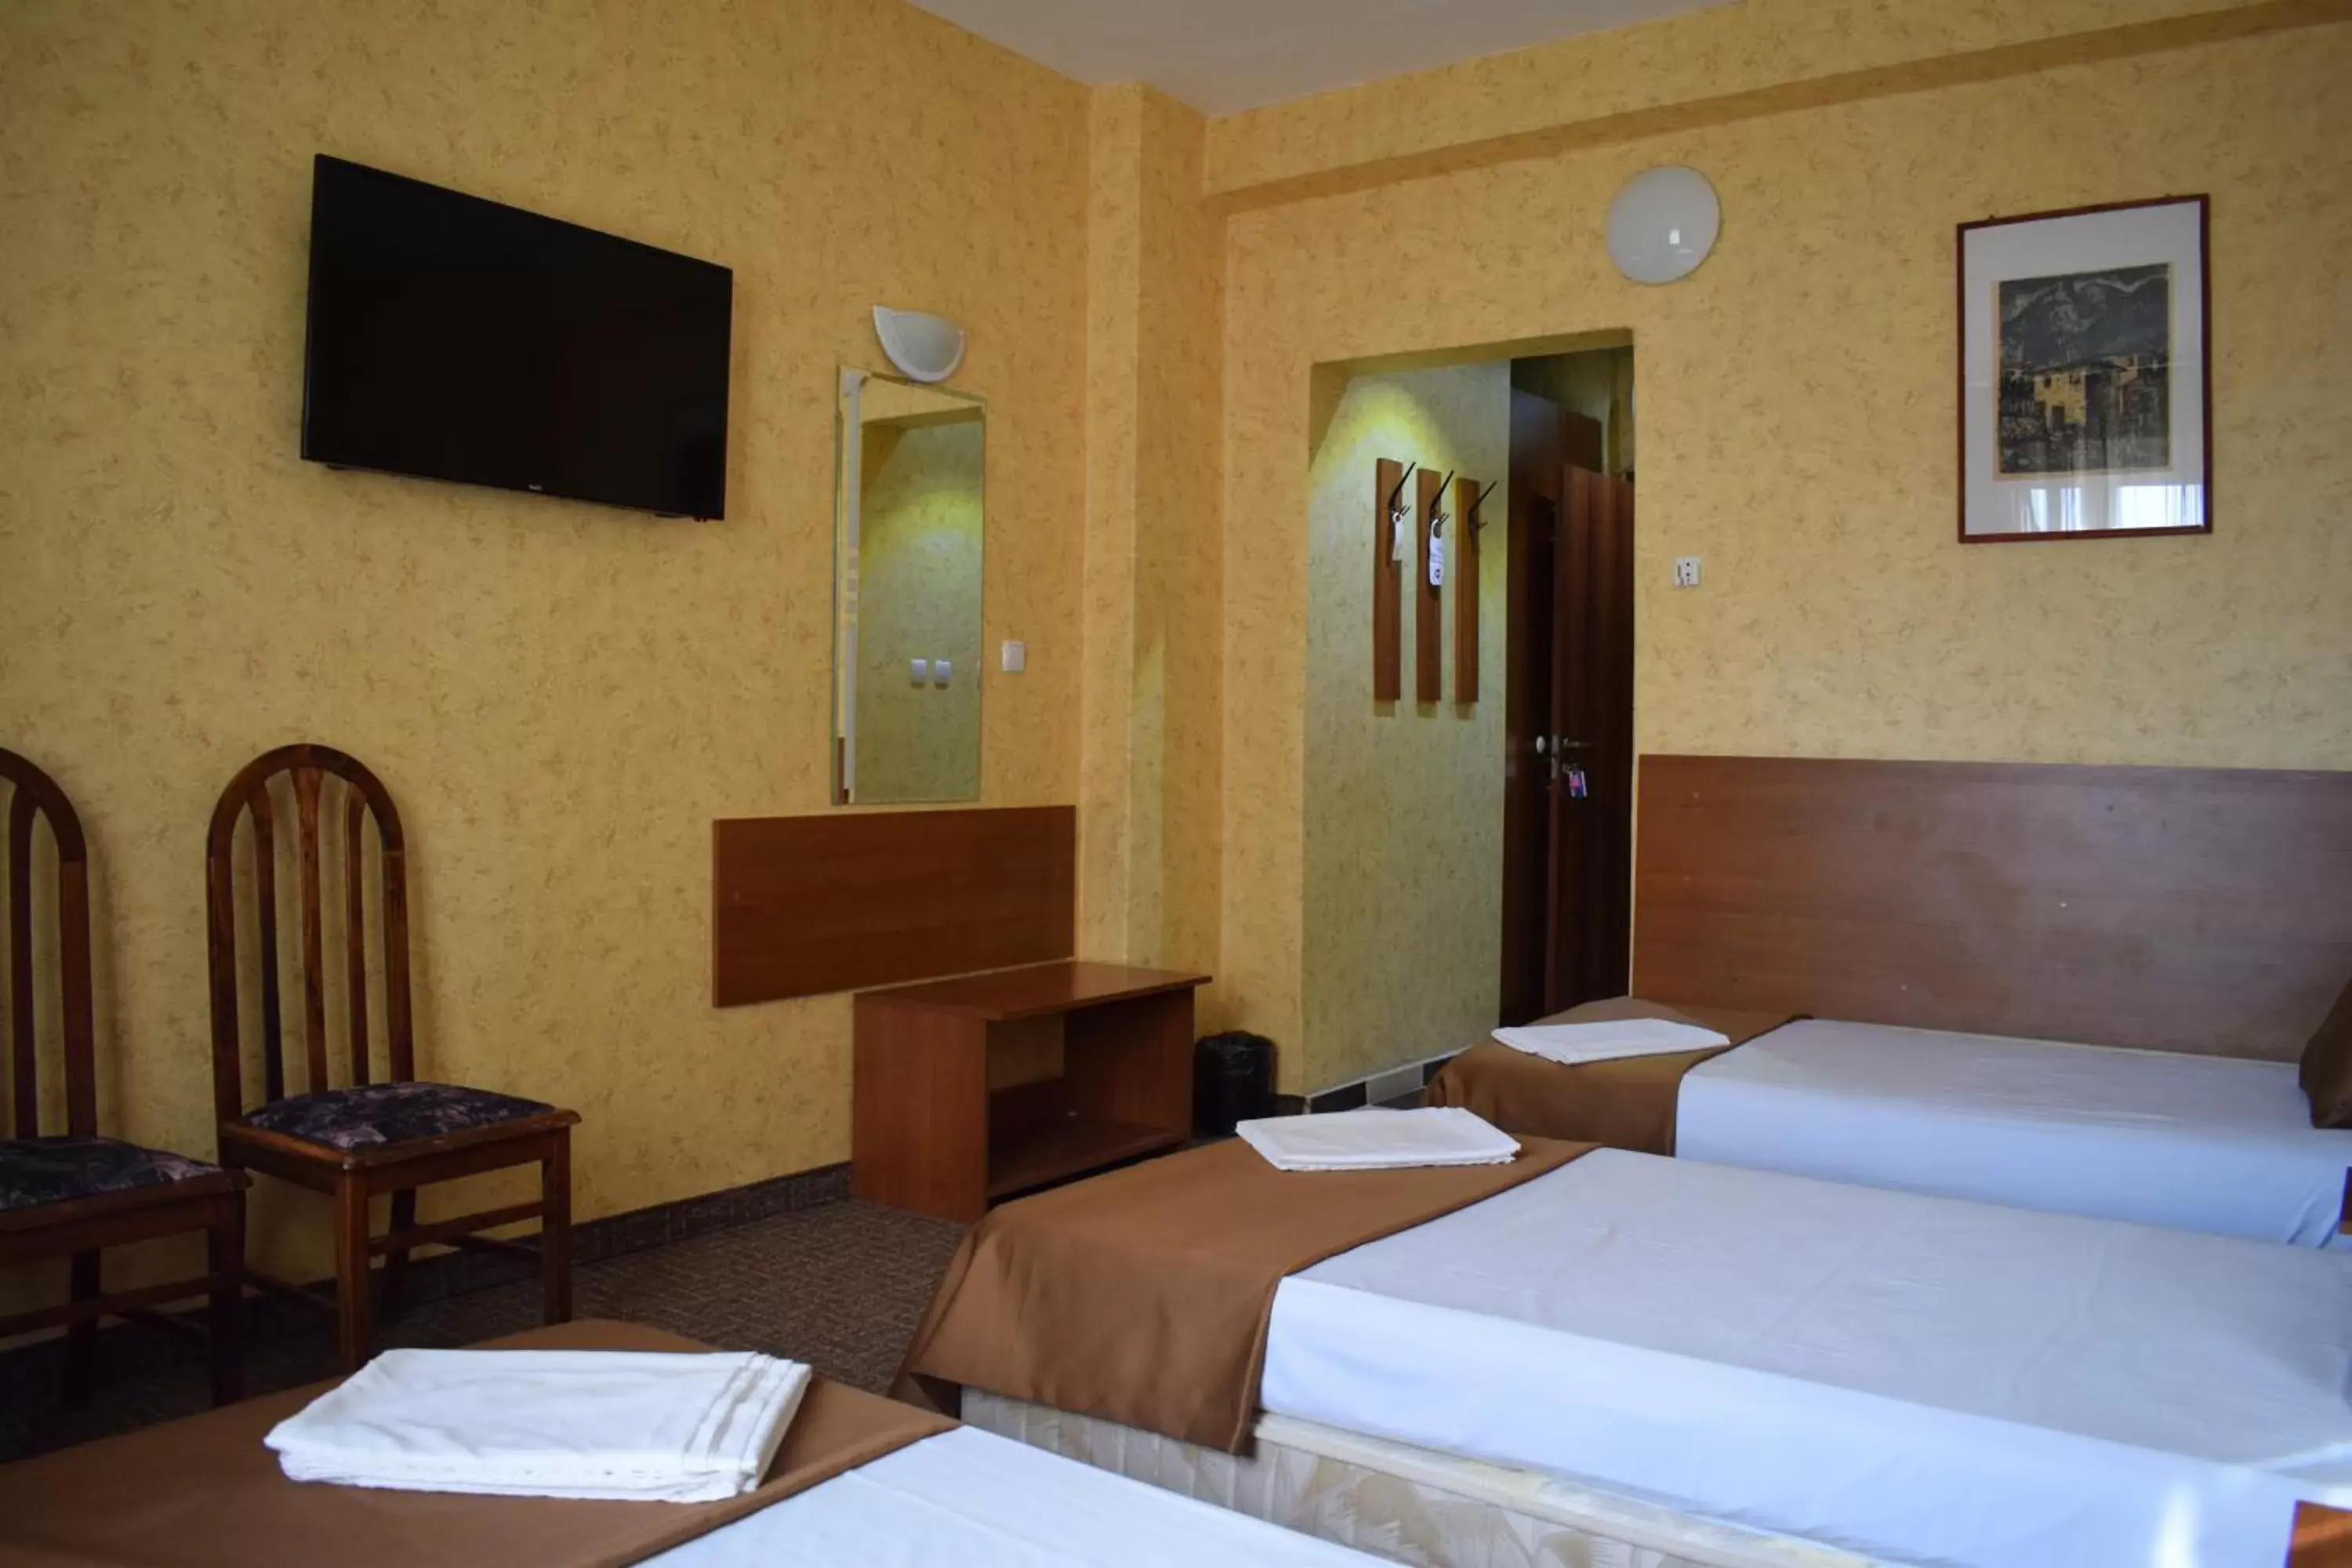 TV and multimedia, Bed in Slavyanska Beseda Hotel